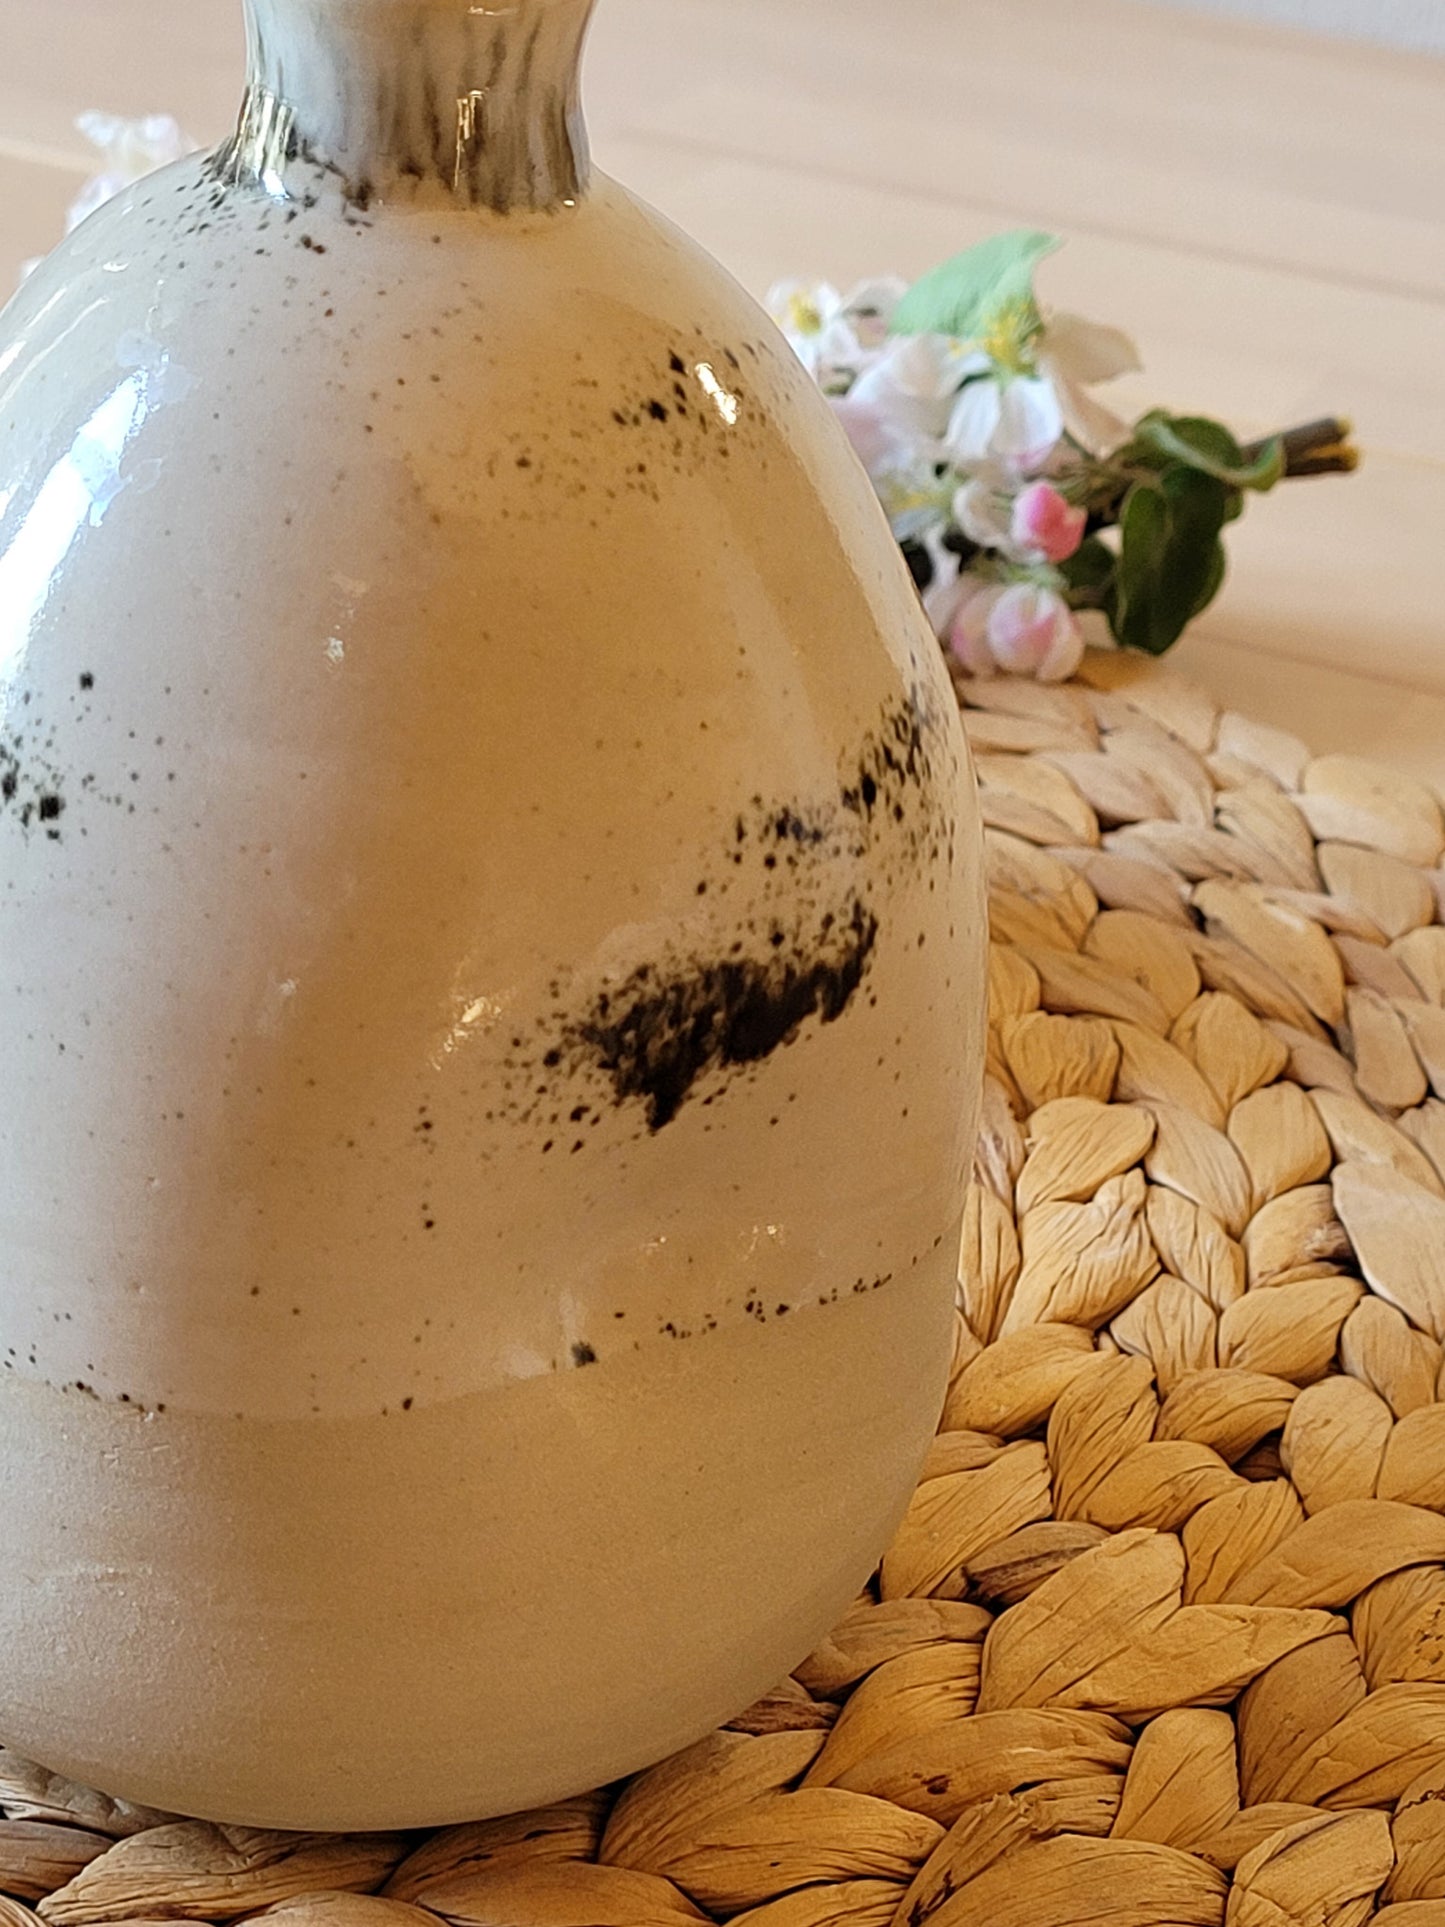 Rustikale handgefertigte Steingut-Keramik – Ölspender-Menage